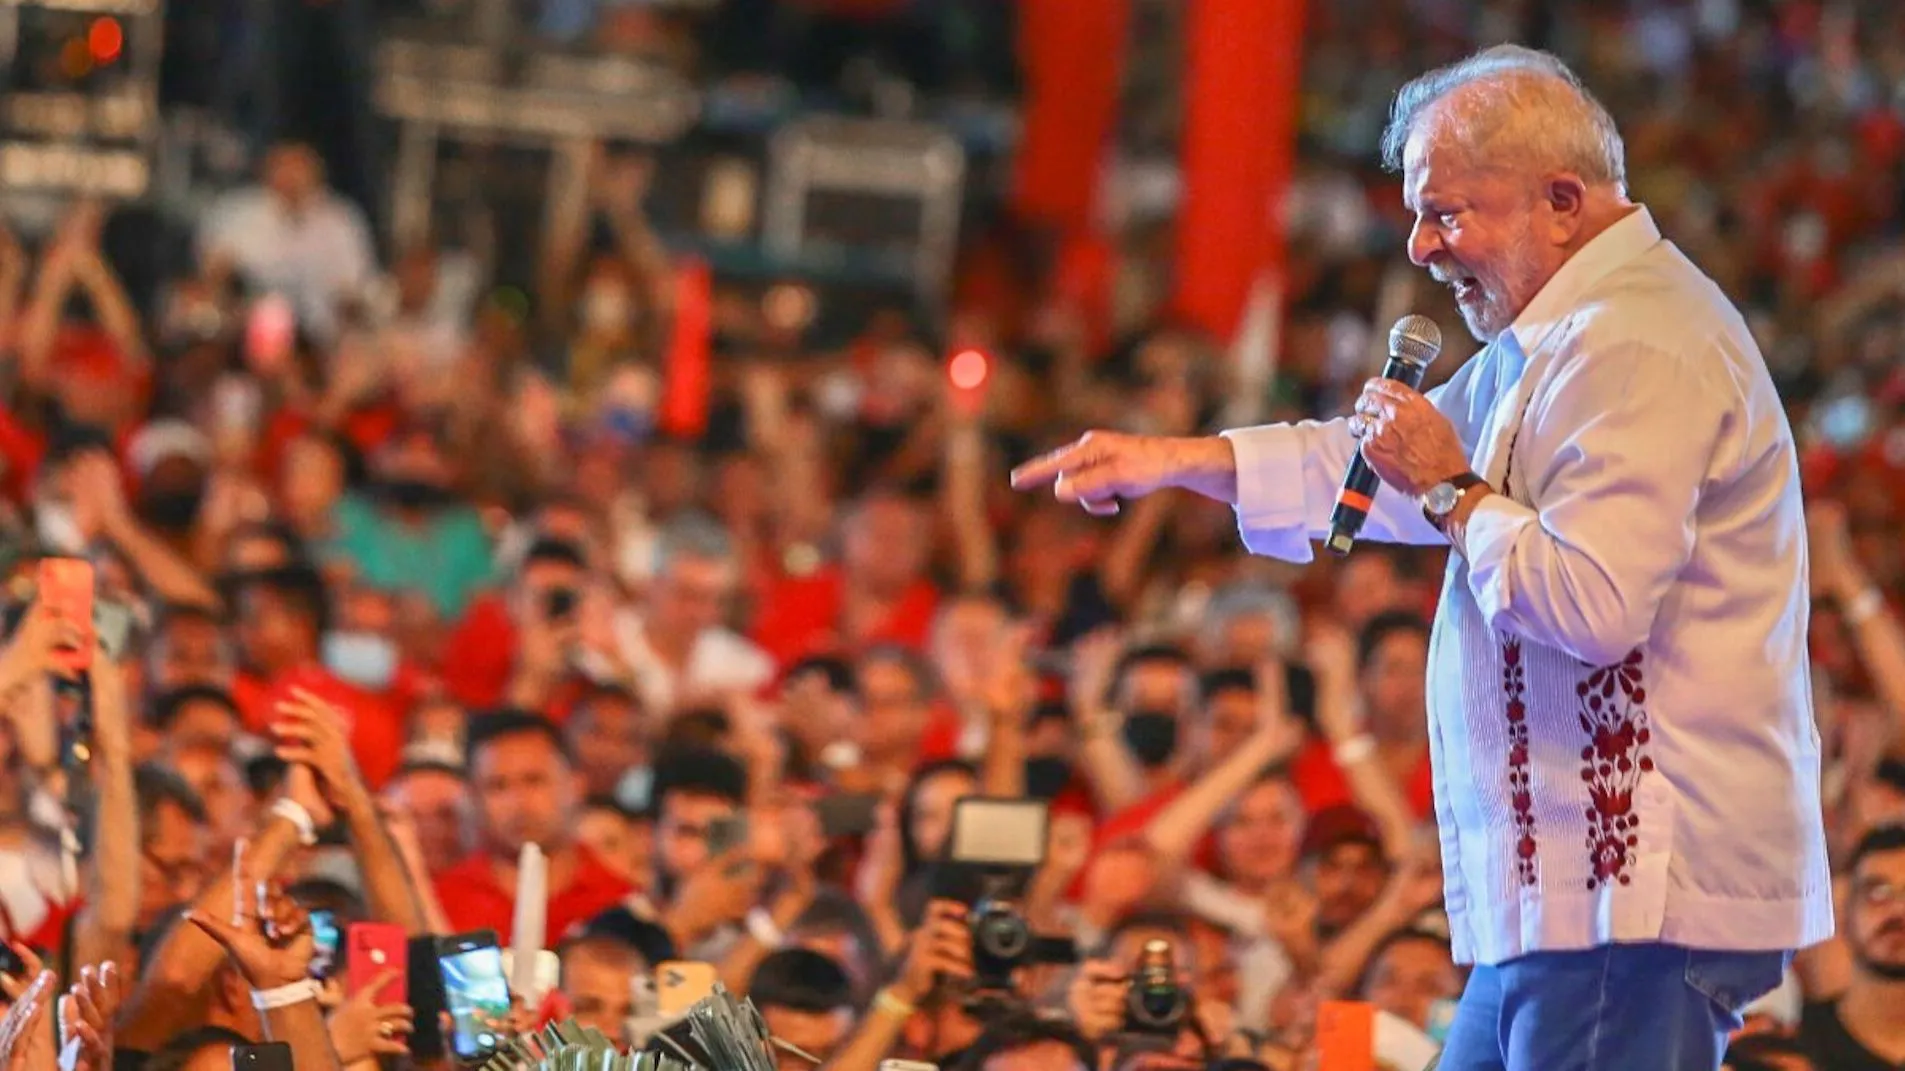 Lula da Silva en campaña en el nordeste brasileño. Apela al "voto útil" paraganar la elección en la primera vuelta. (Campaña Lula)